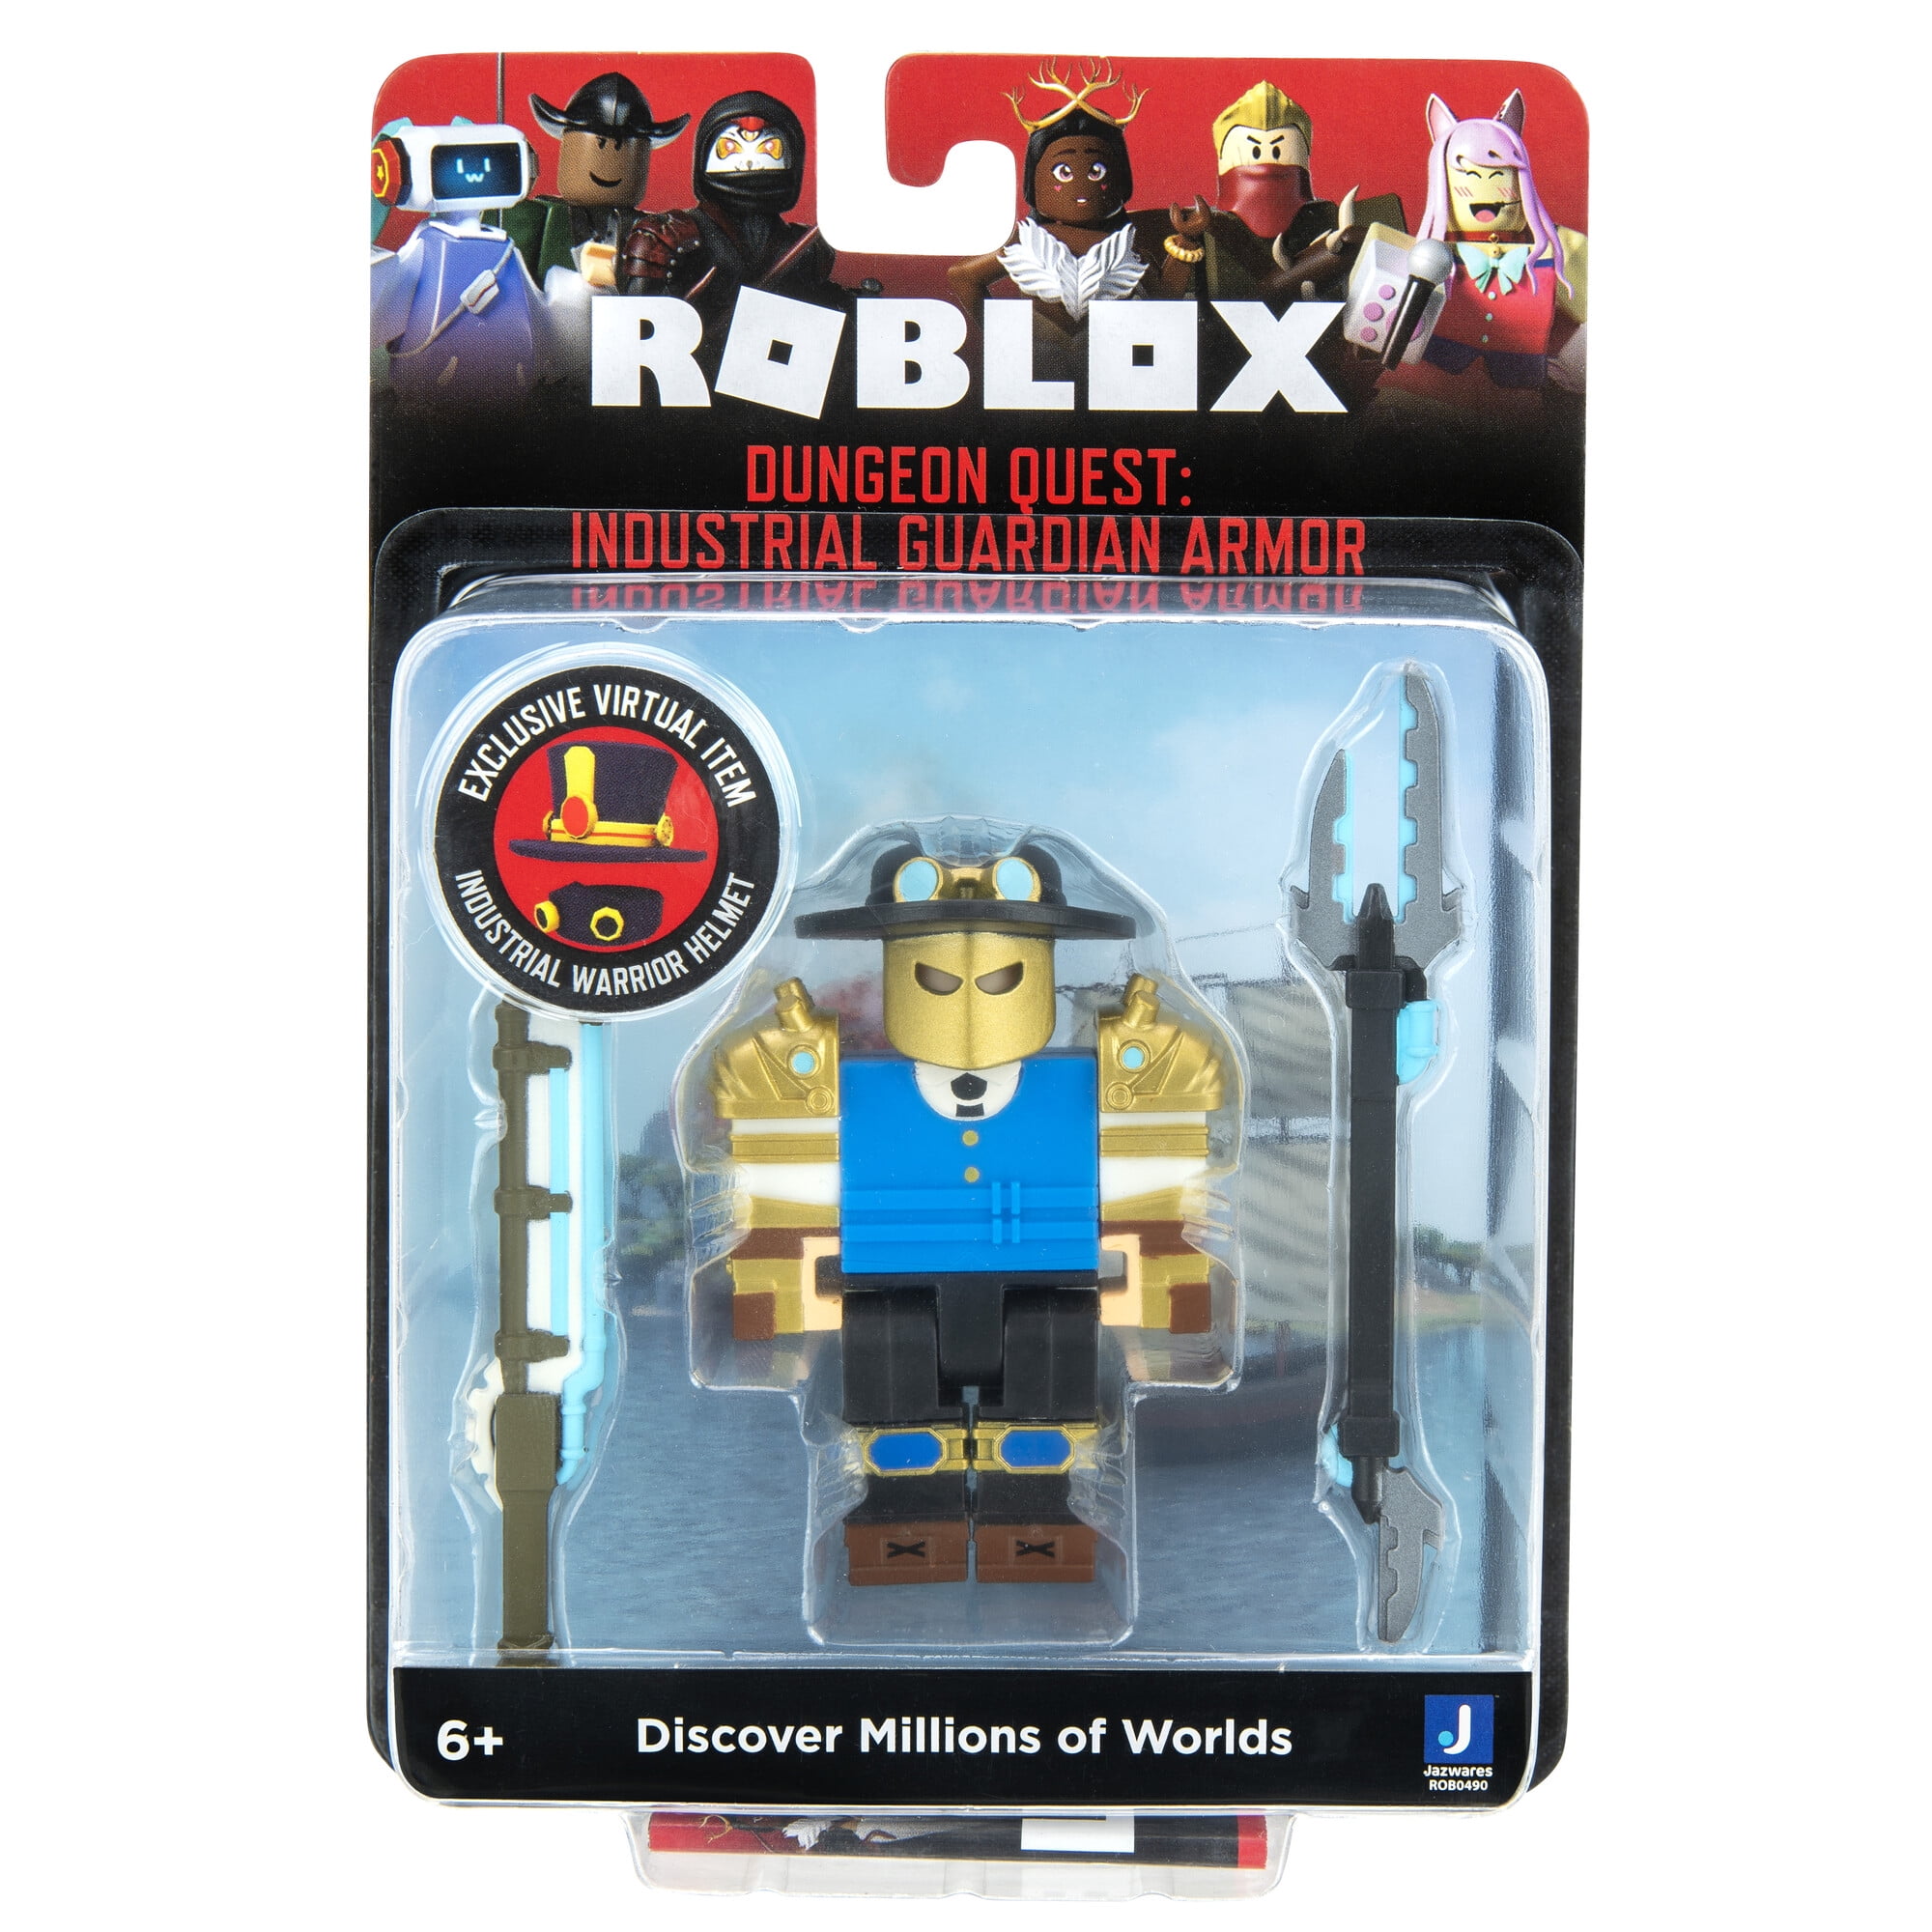  Roblox Action Collection - Jailbreak: Museum Heist